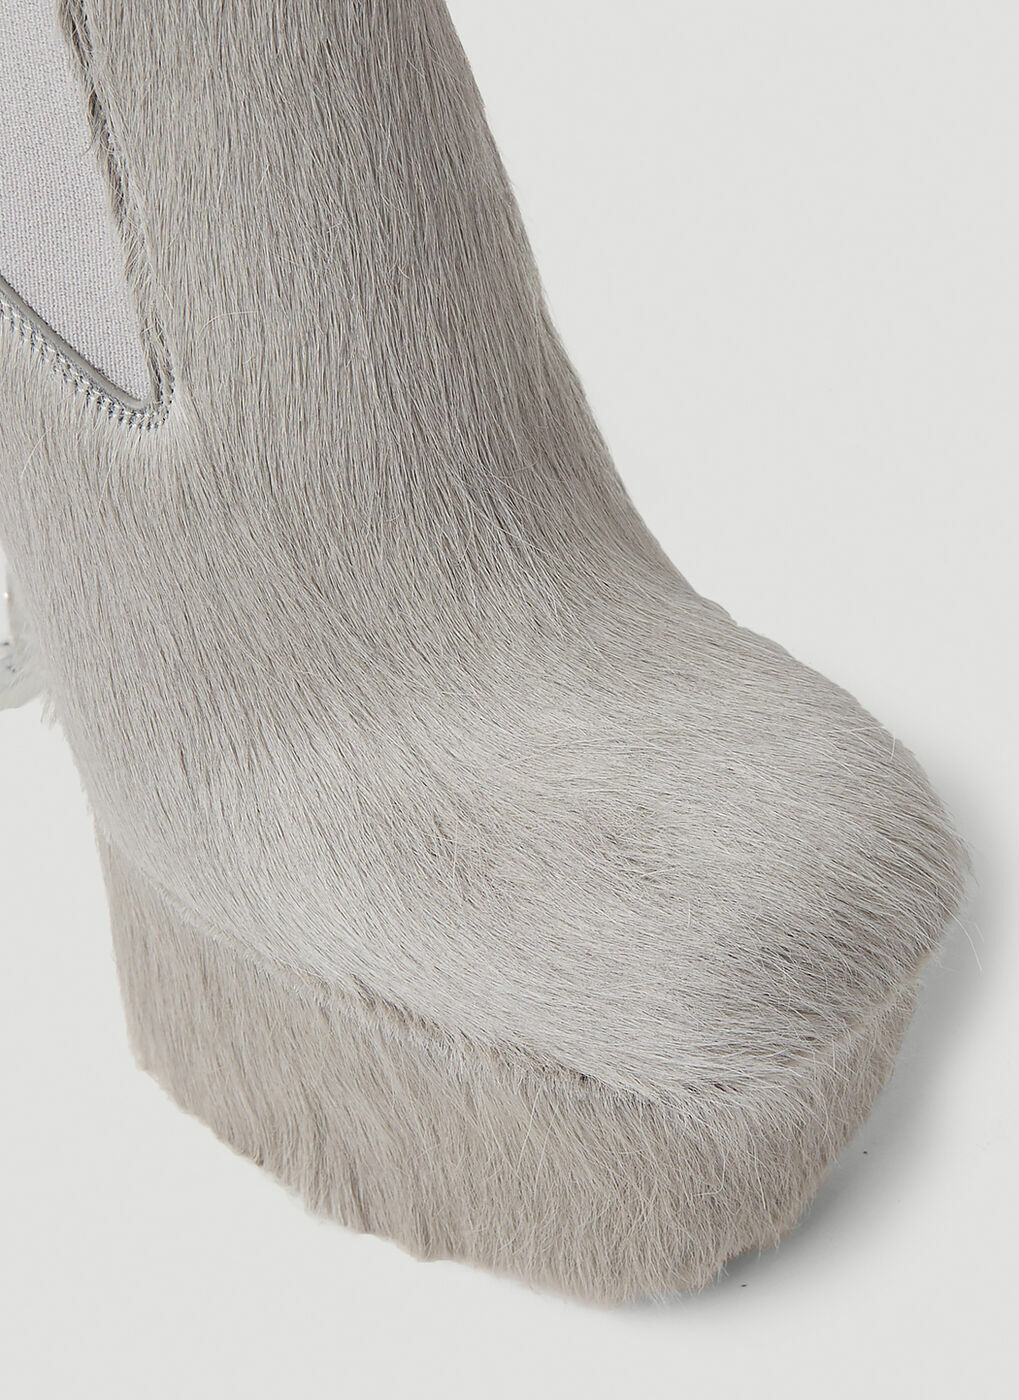 Hairy Platform Heel Boots in Grey